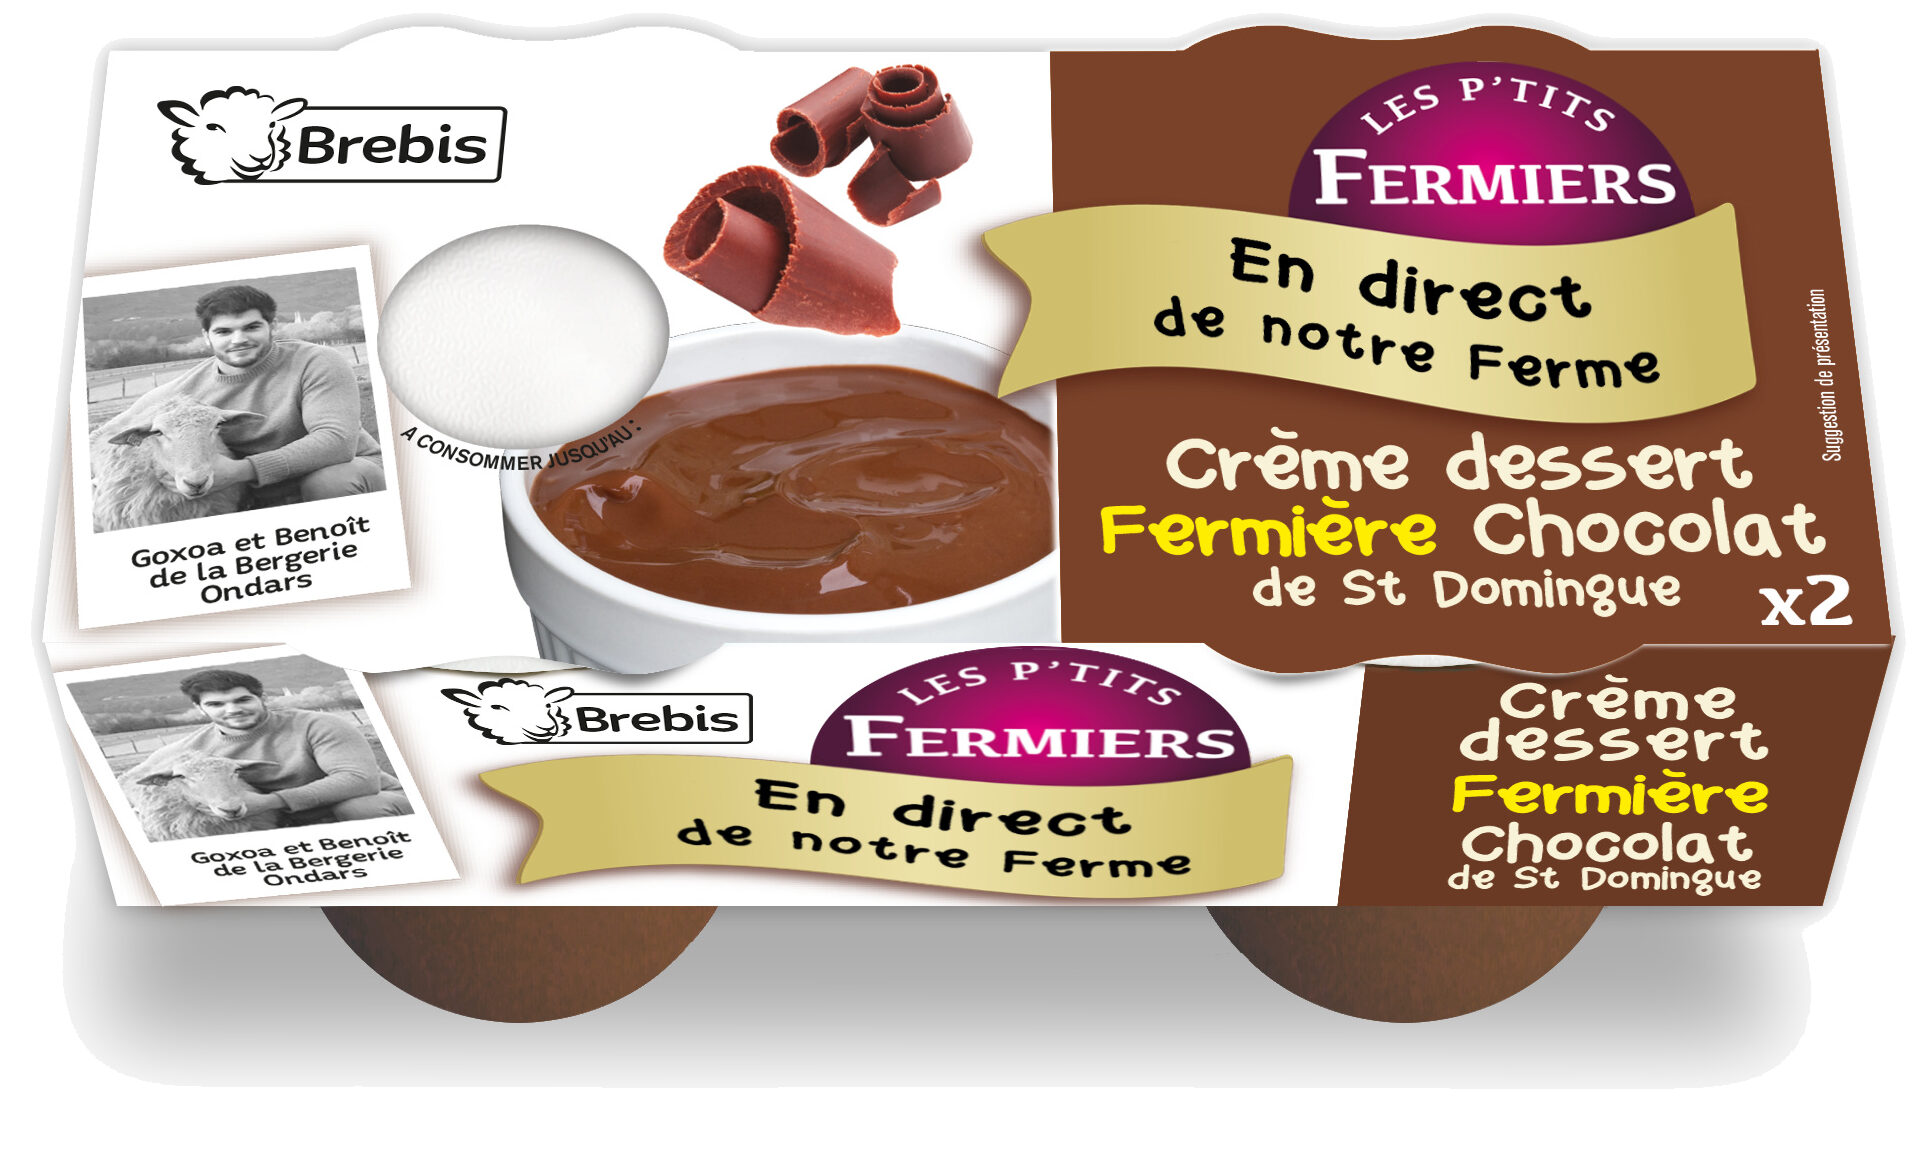 Crème dessert brebis fermière Chocolat - Product - fr